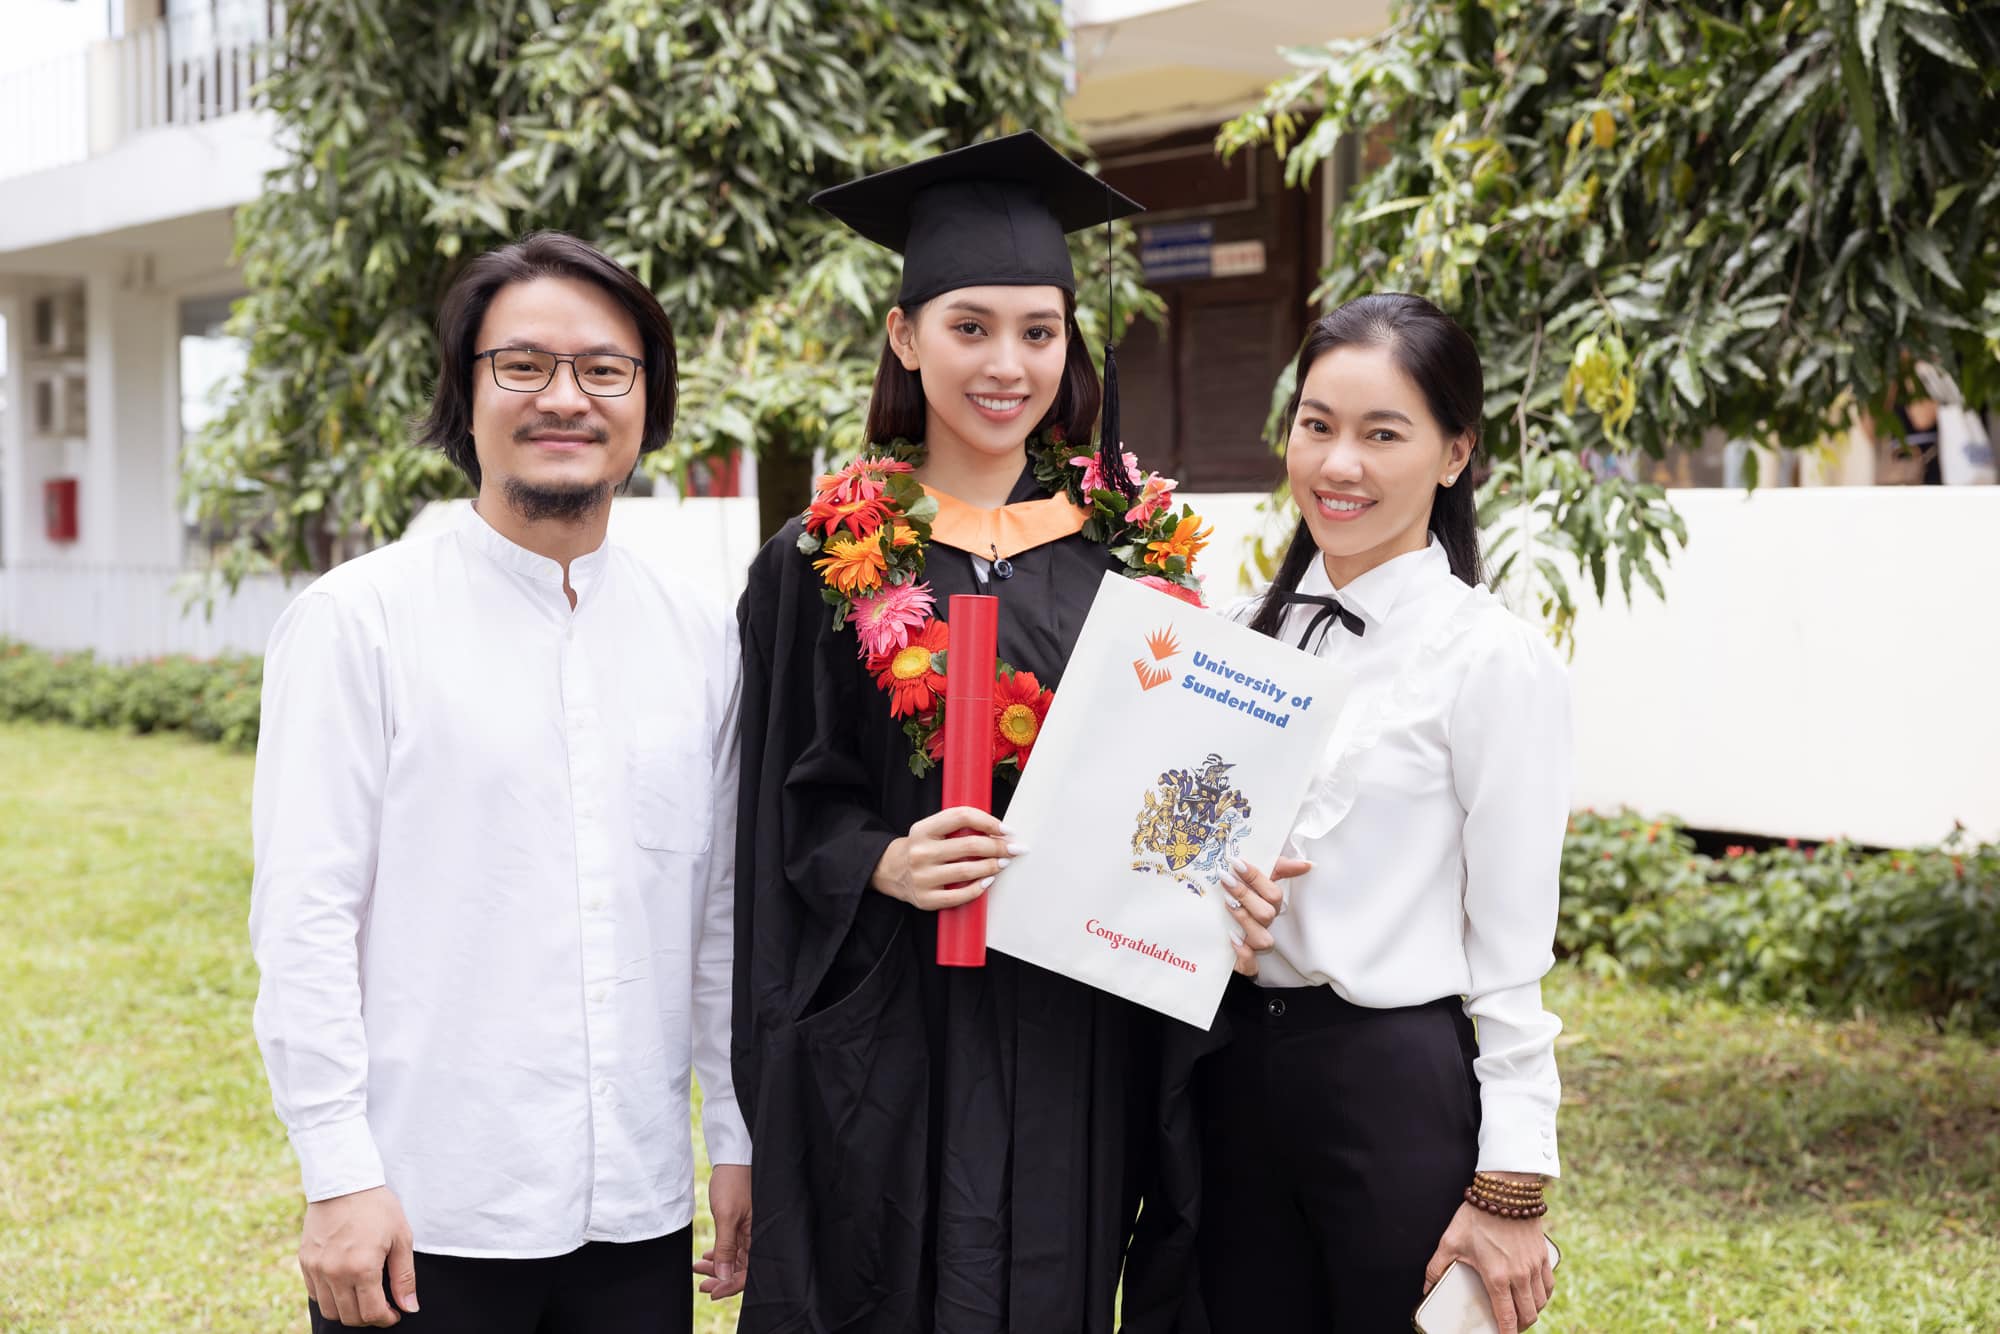 Chuyện làng sao - Hoa hậu Tiểu Vy trong buổi lễ tốt nghiệp đại học (Hình 3).